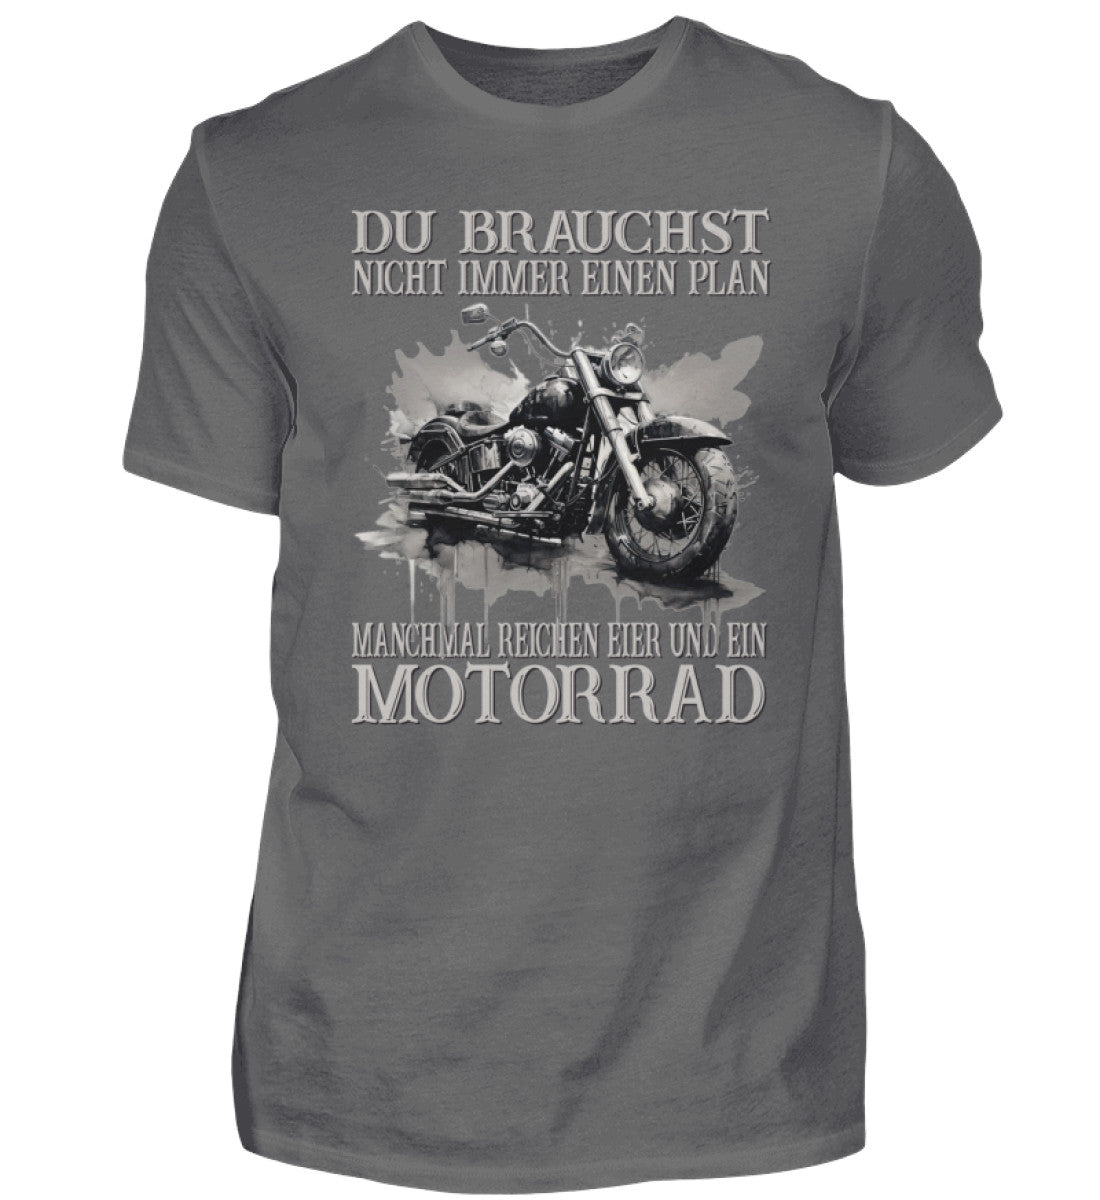 Ein Biker T-Shirt für Motorradfahrer von Wingbikers mit dem Aufdruck, Du brauchst nicht immer einen Plan - Manchmal reichen Eier und ein Motorrad - in grau.